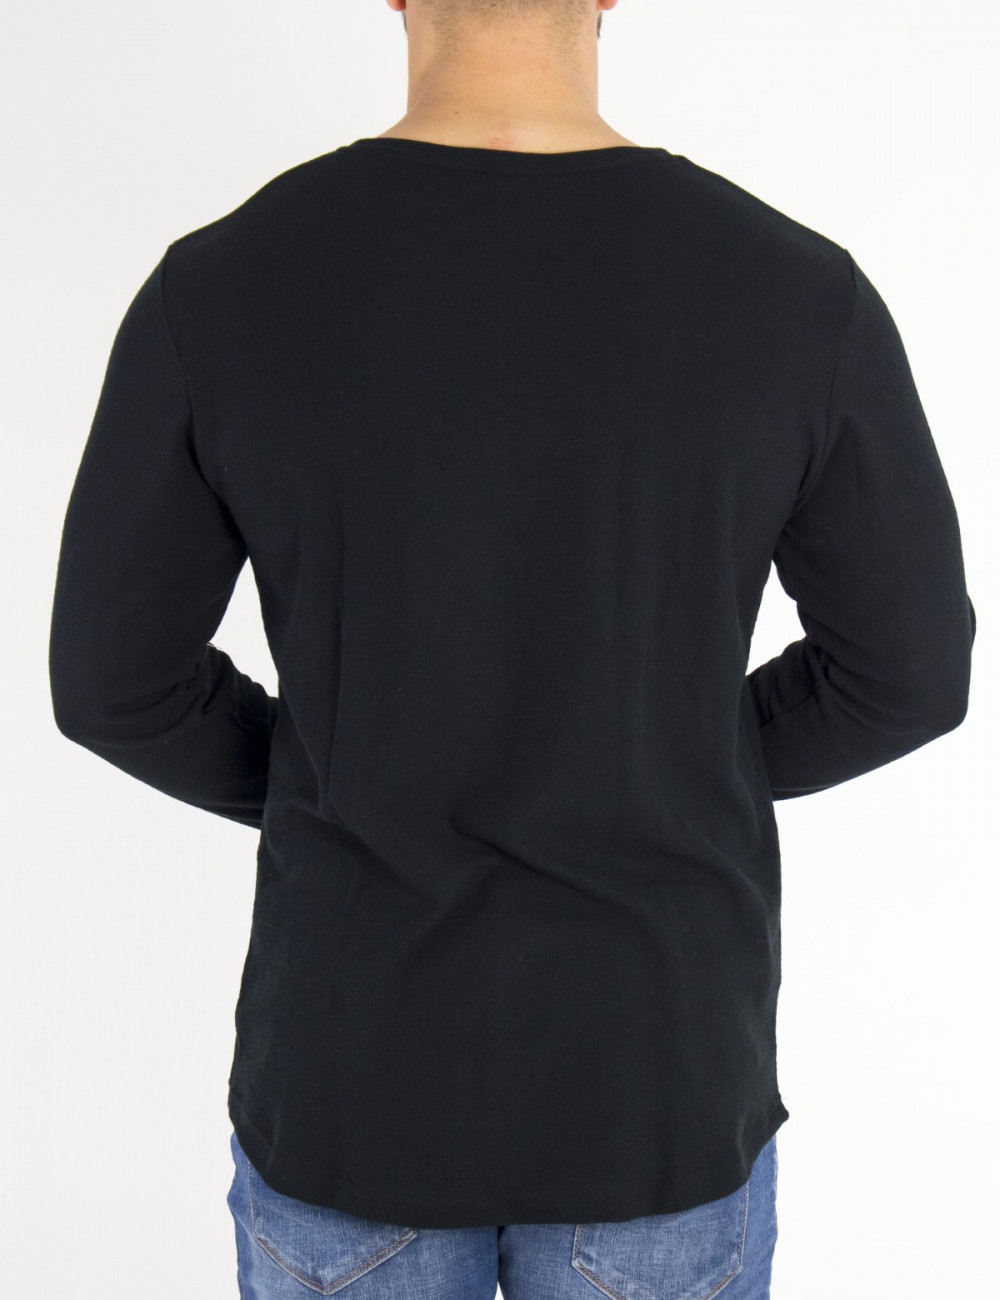 NDC ανδρική μαύρη μακρυμάνικη μπλούζα 2311410